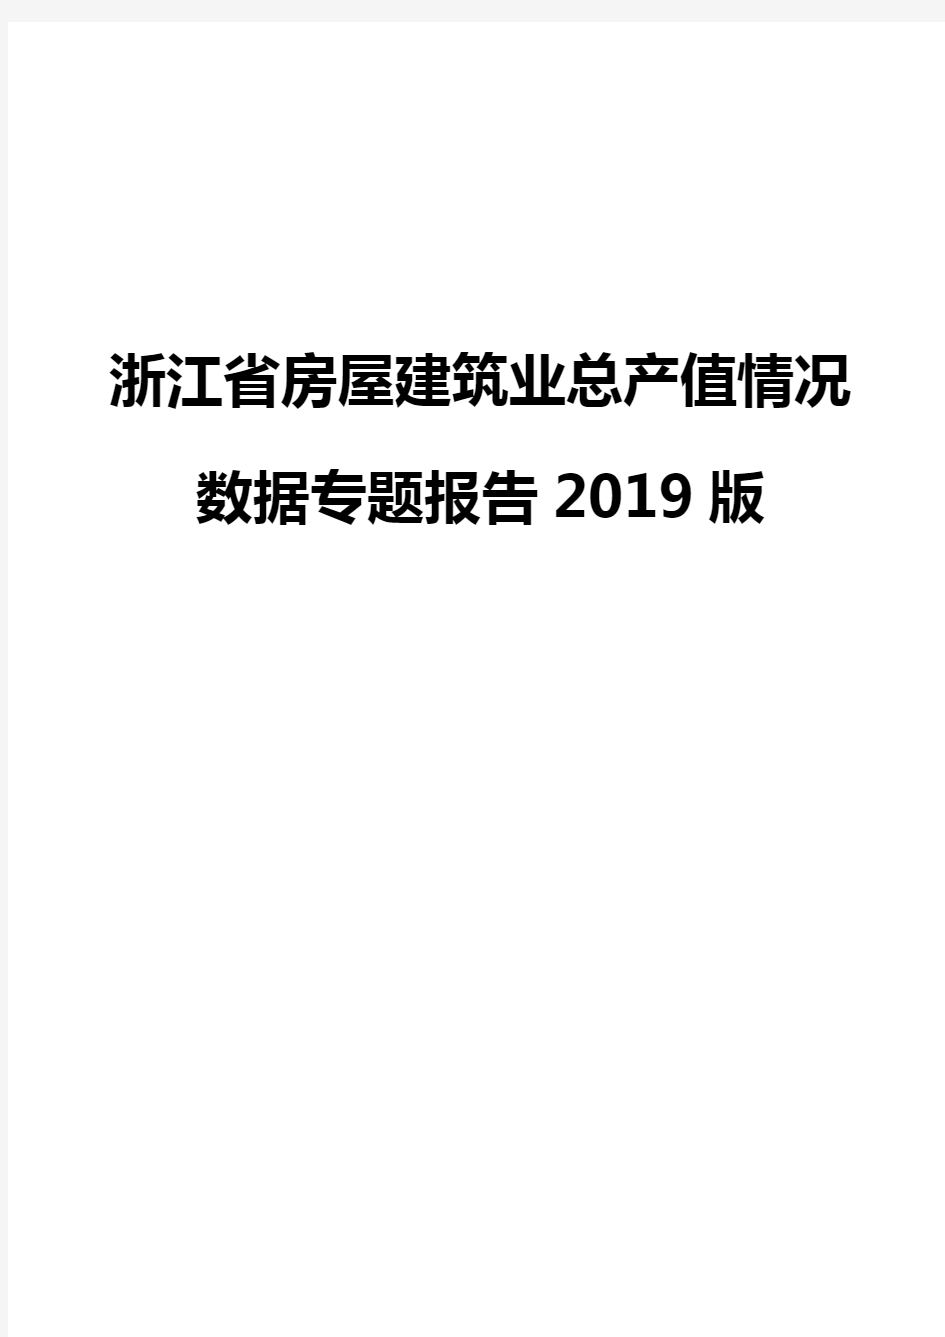 浙江省房屋建筑业总产值情况数据专题报告2019版